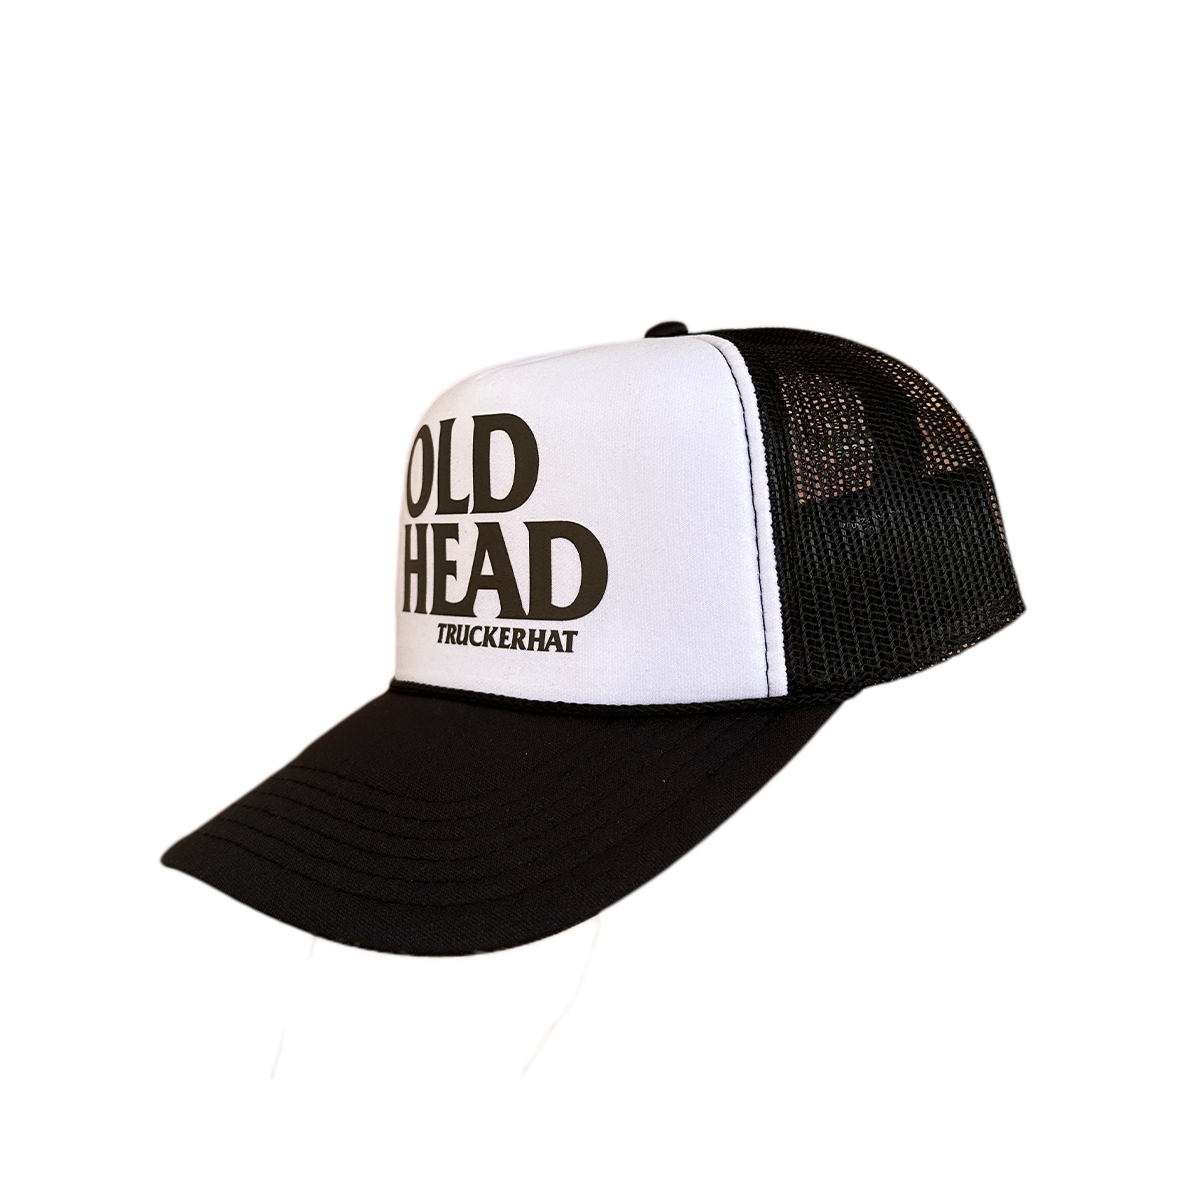 Mud Old Head Trucker Hat - Black/White